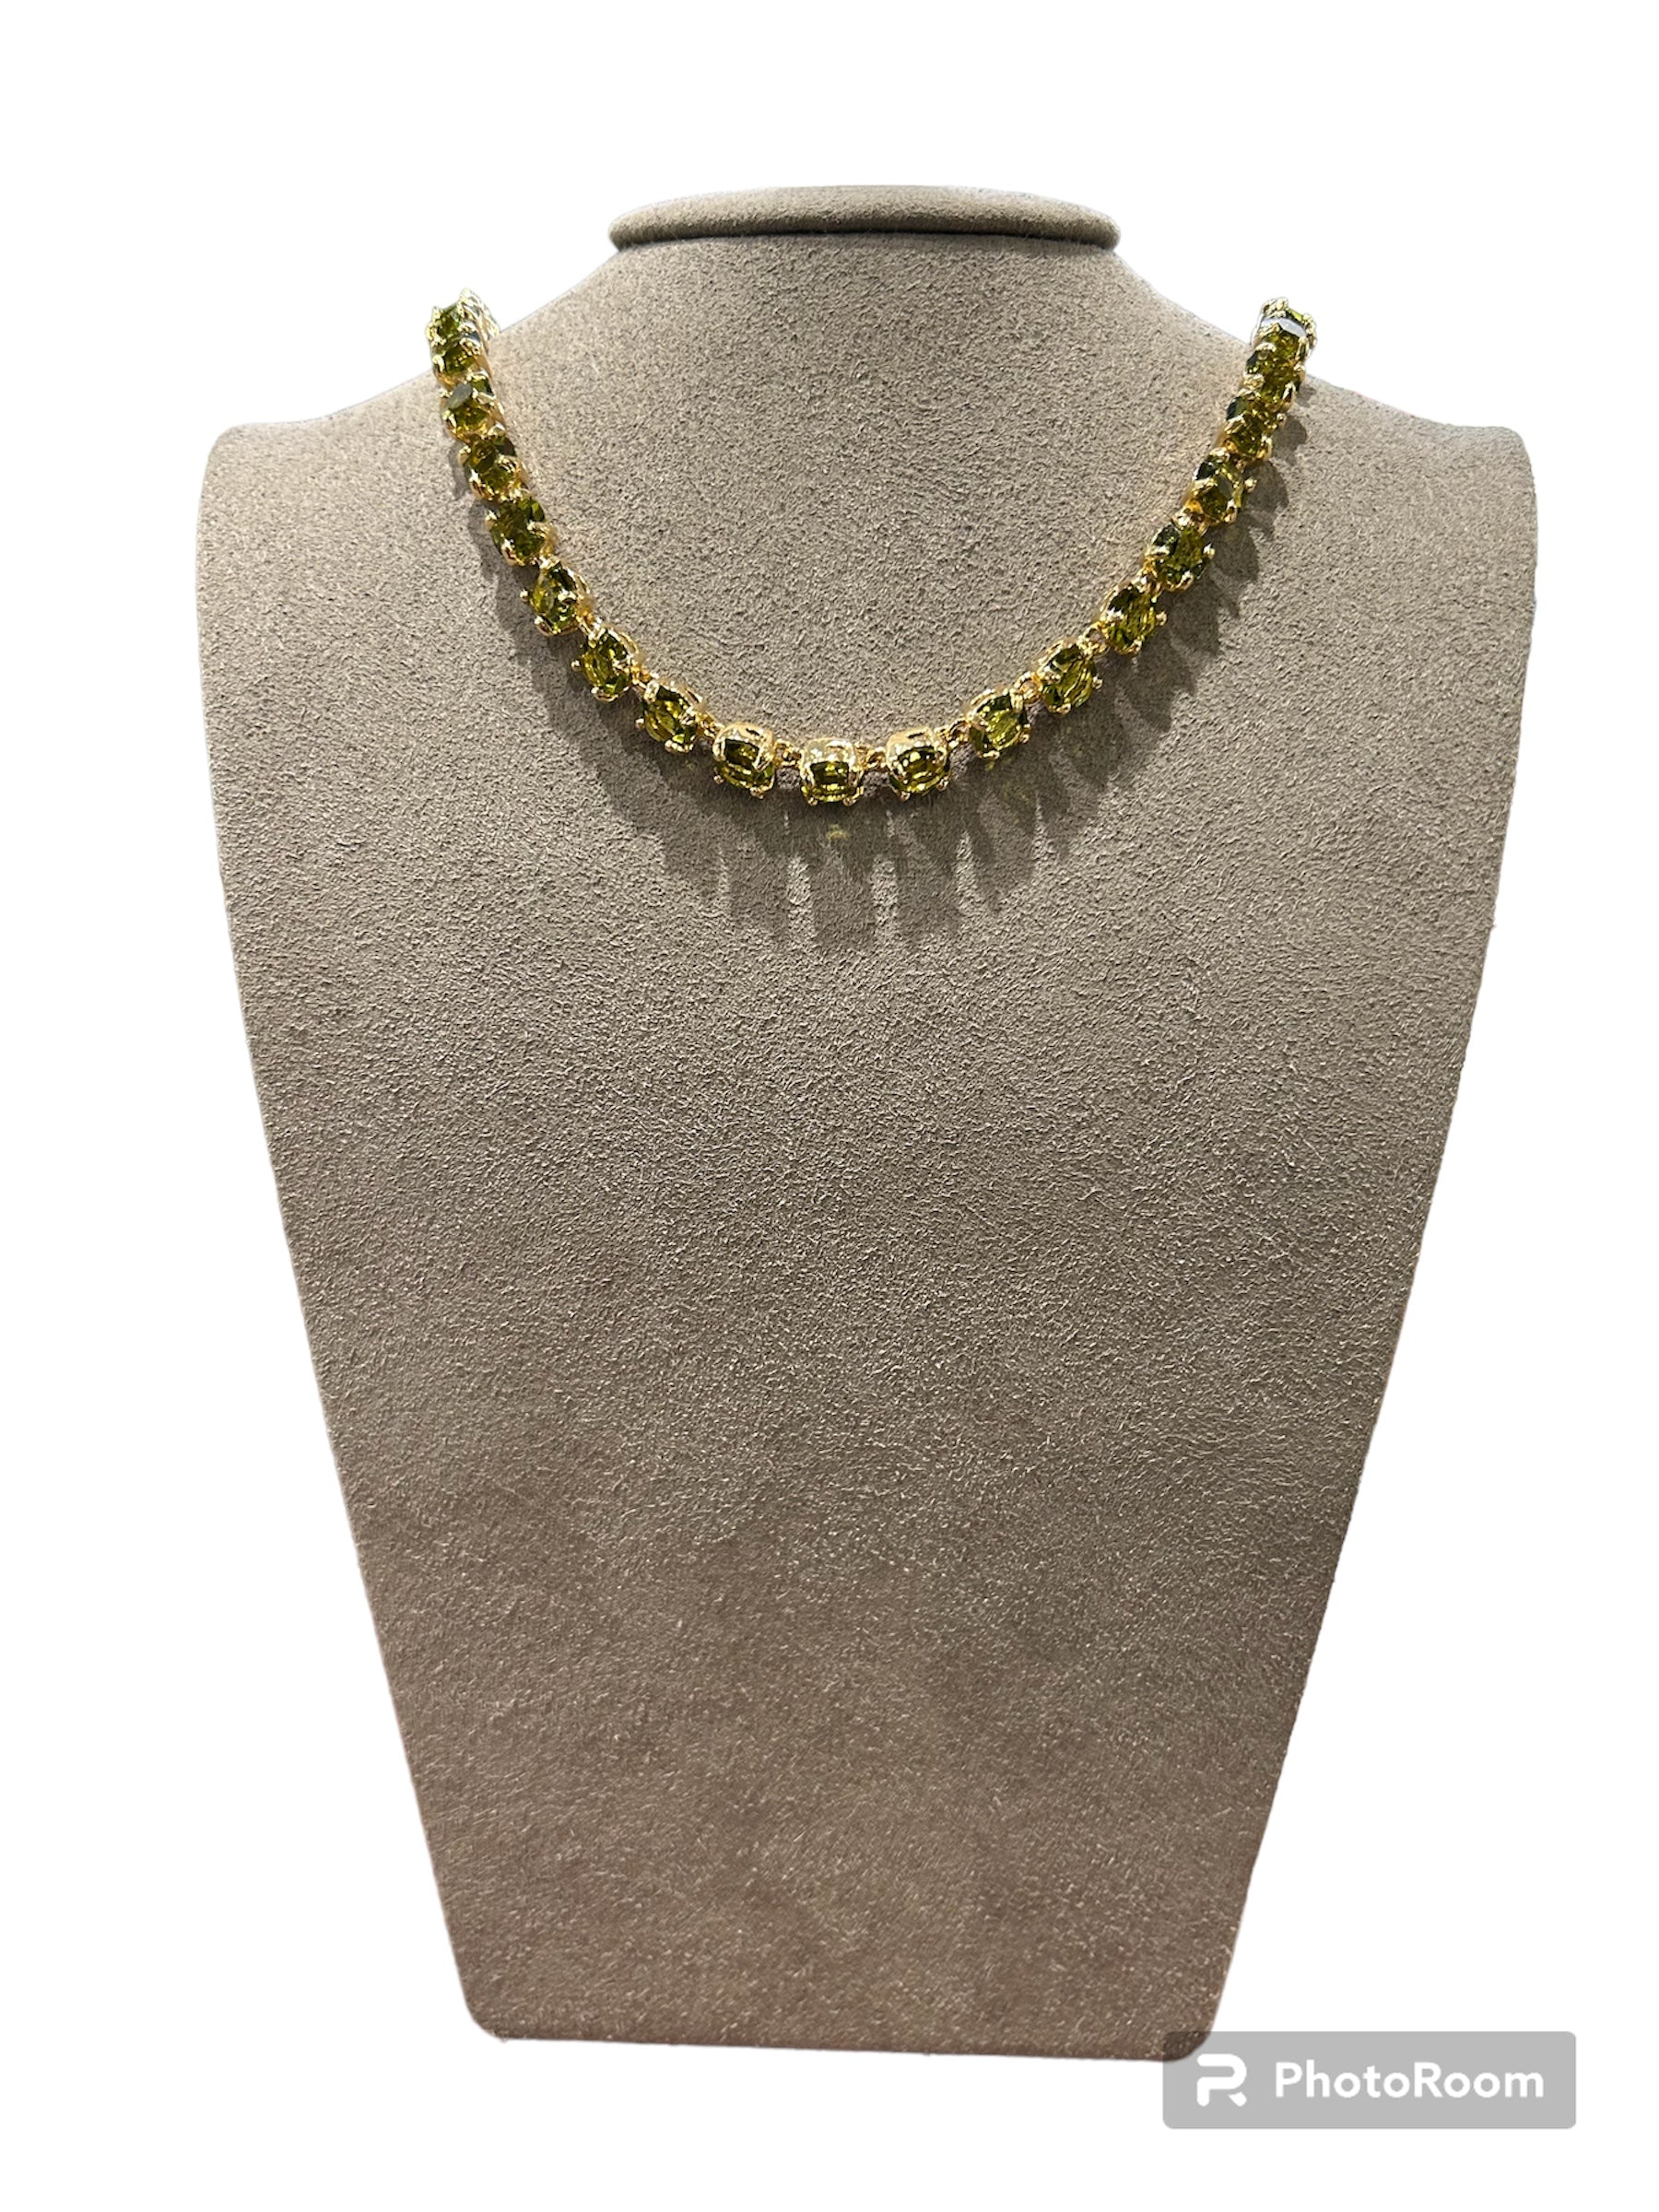 IL Mio Re - Necklace with golden bronze peridot green stones - ILMIORE CL 020 GV